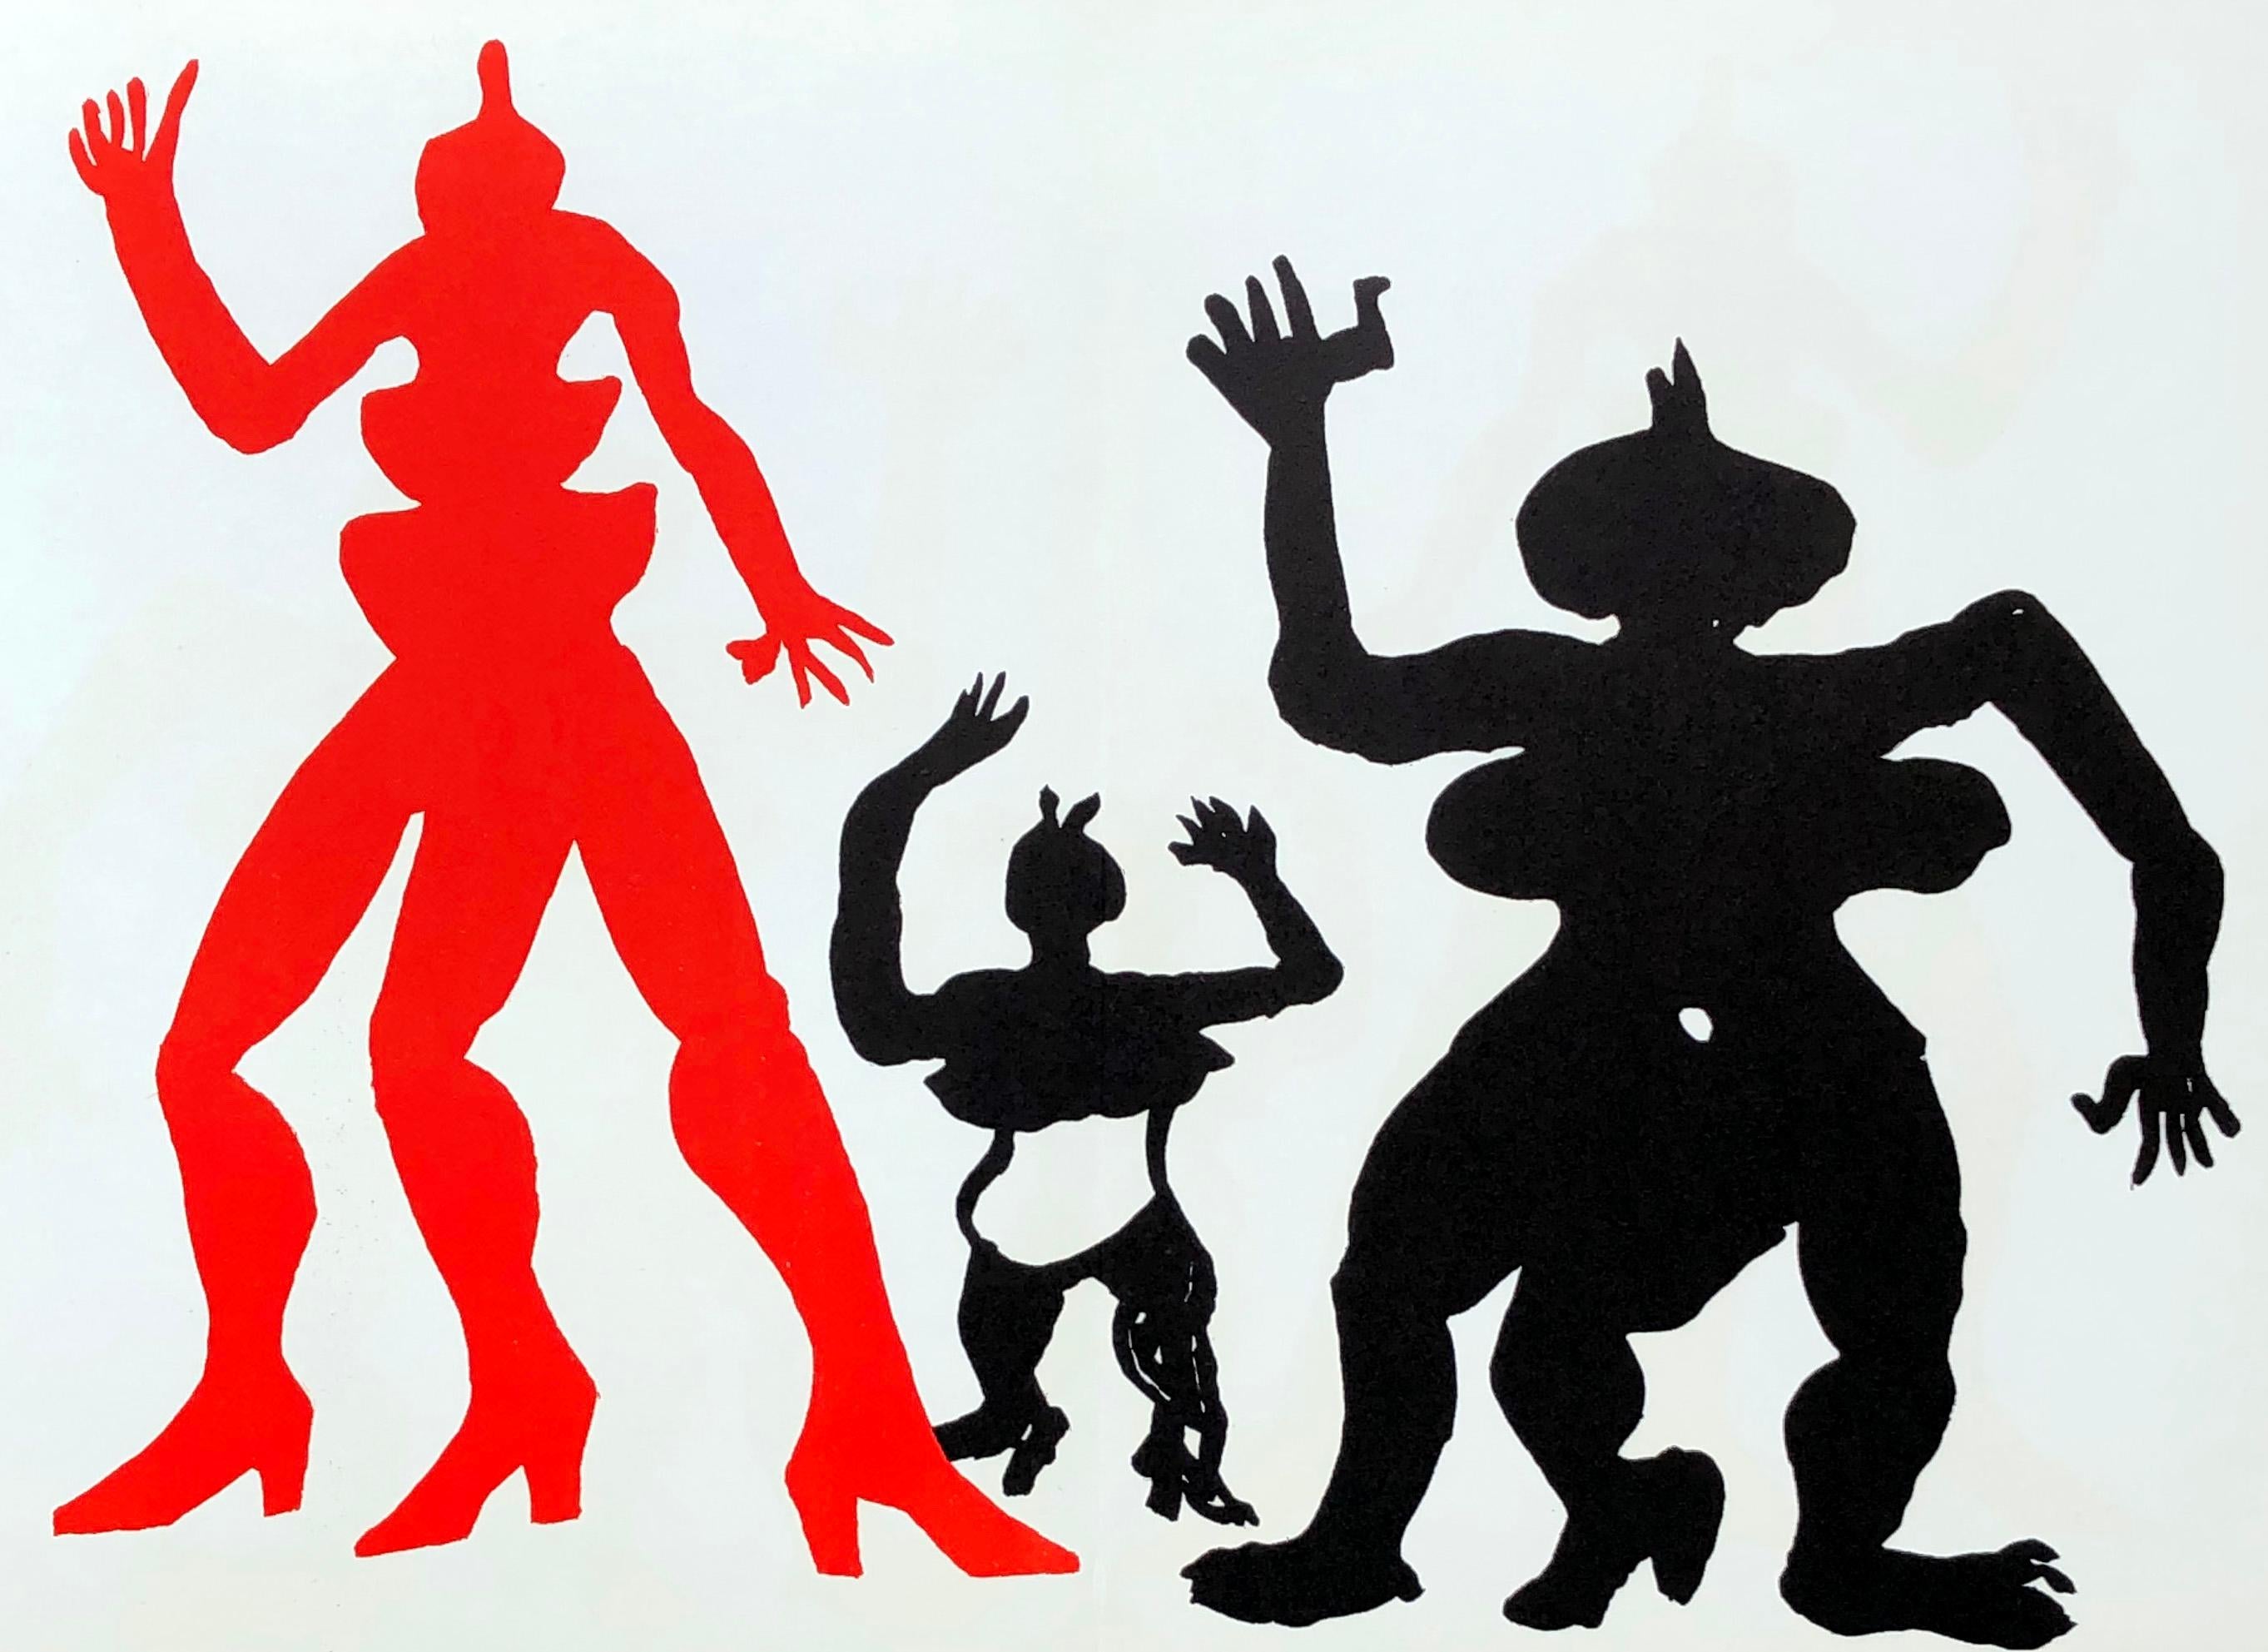 1970er Alexander Calder Lithographie aus Derriere le Miroir:

Medium: Farblithographie. 1975.
Abmessungen: 15 x 22 Zoll.
Center fold-line wie ausgegeben; sehr guter Gesamtzustand Jahrgang.
Veröffentlicht von: Galerie Maeght, Paris 1975.
Unsigniert